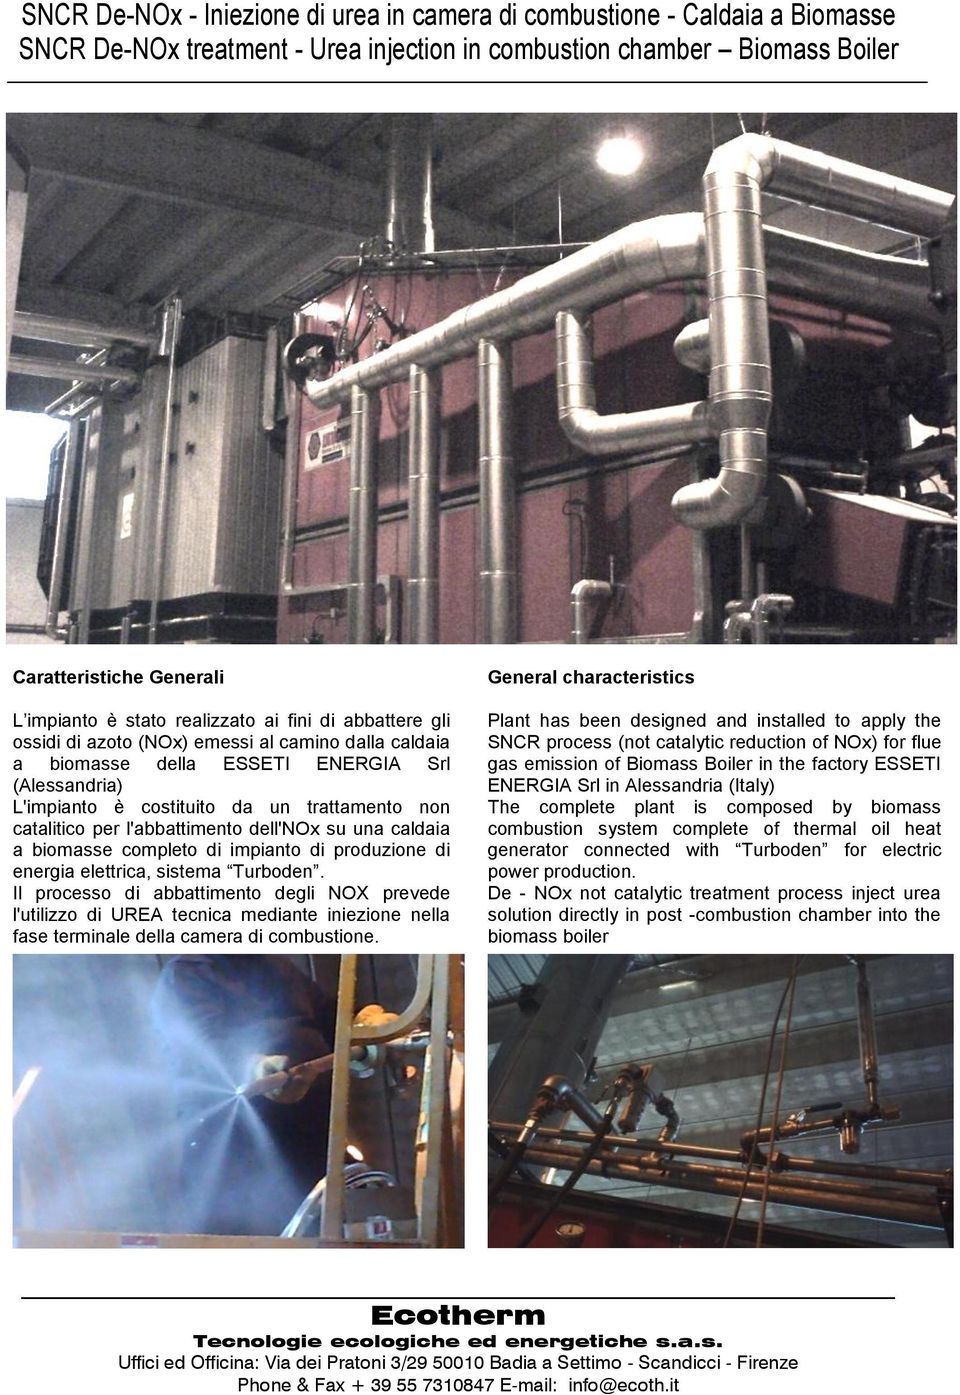 l'abbattimento dell'nox su una caldaia a biomasse completo di impianto di produzione di energia elettrica, sistema Turboden.